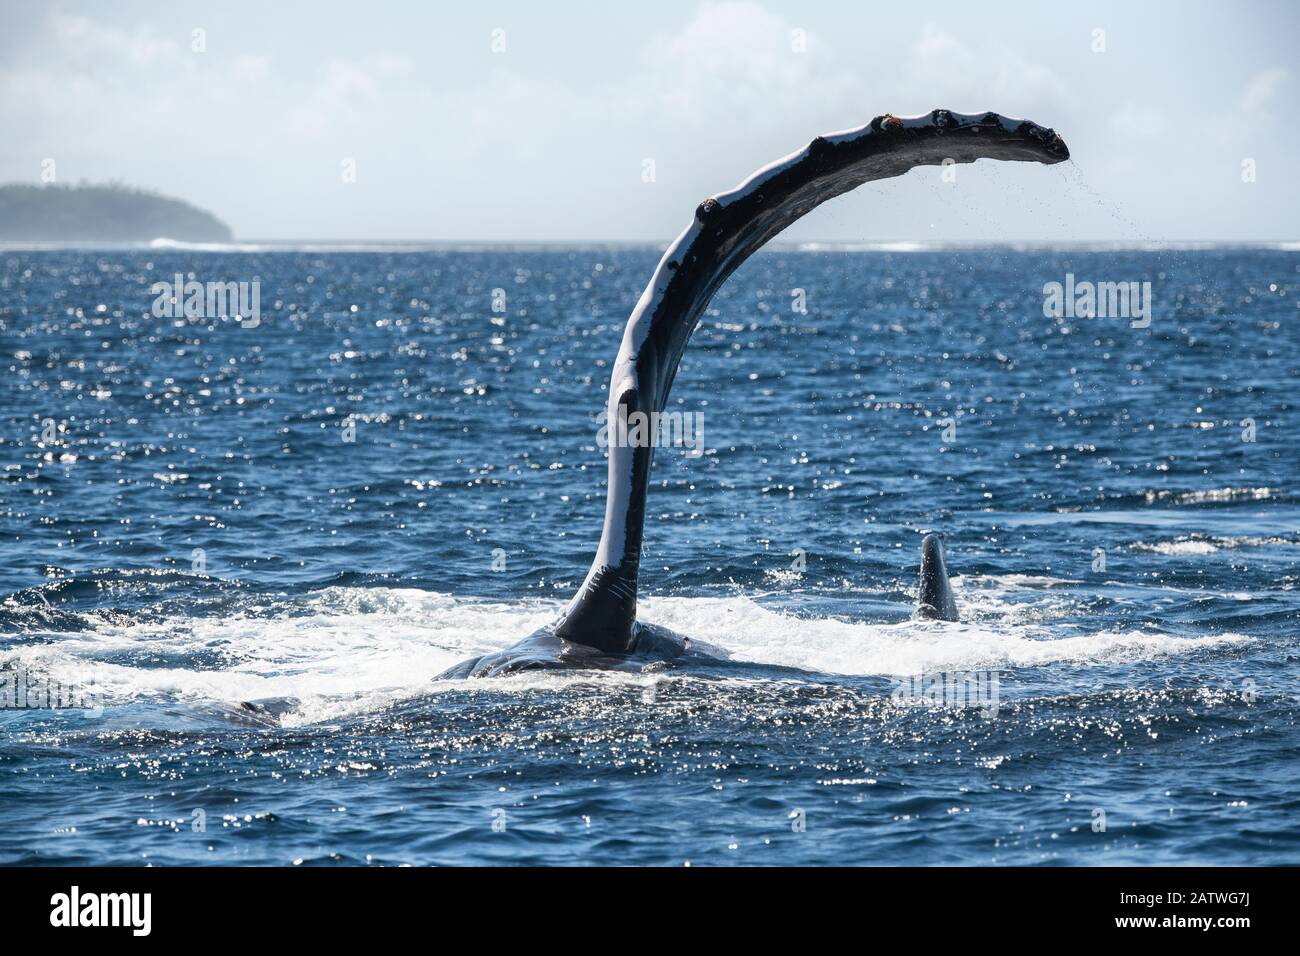 Baleine à bosse (Megaptera novaeangliae) posée de son côté tout en exécutant une série de taps de nageoires pectorales sur la surface de l'océan. Vavau, Tonga, Pacifique Sud. Banque D'Images